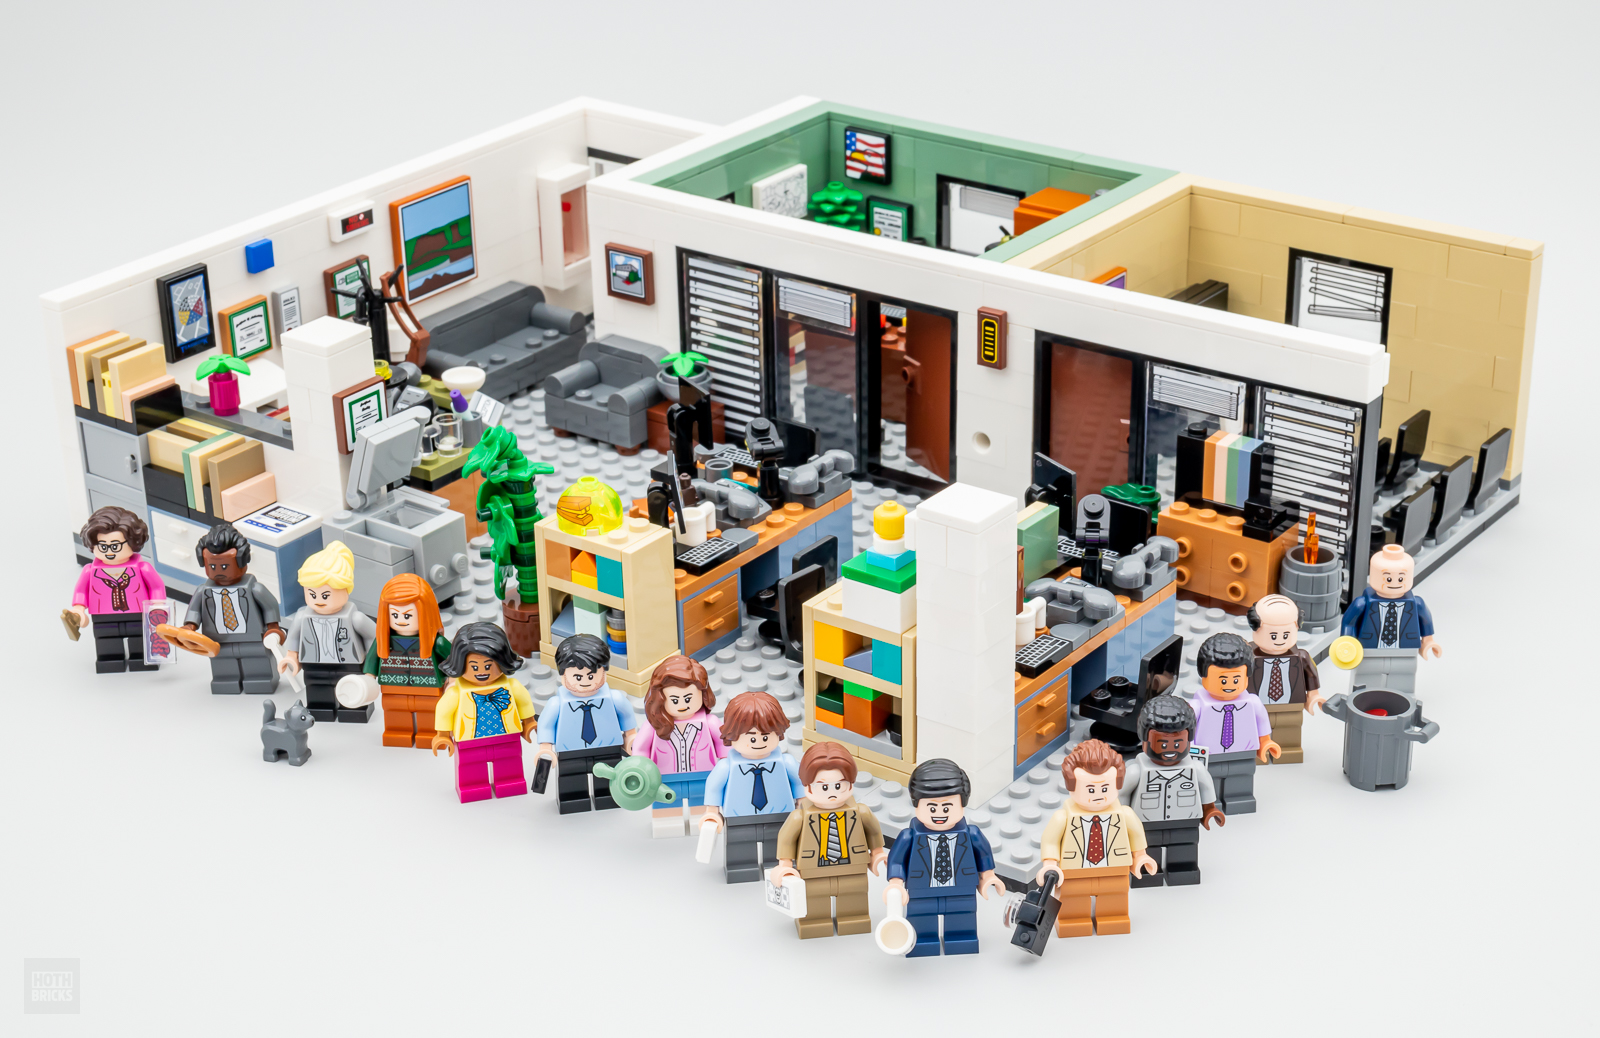 Testat rapid: LEGO Ideas 21336 The Office